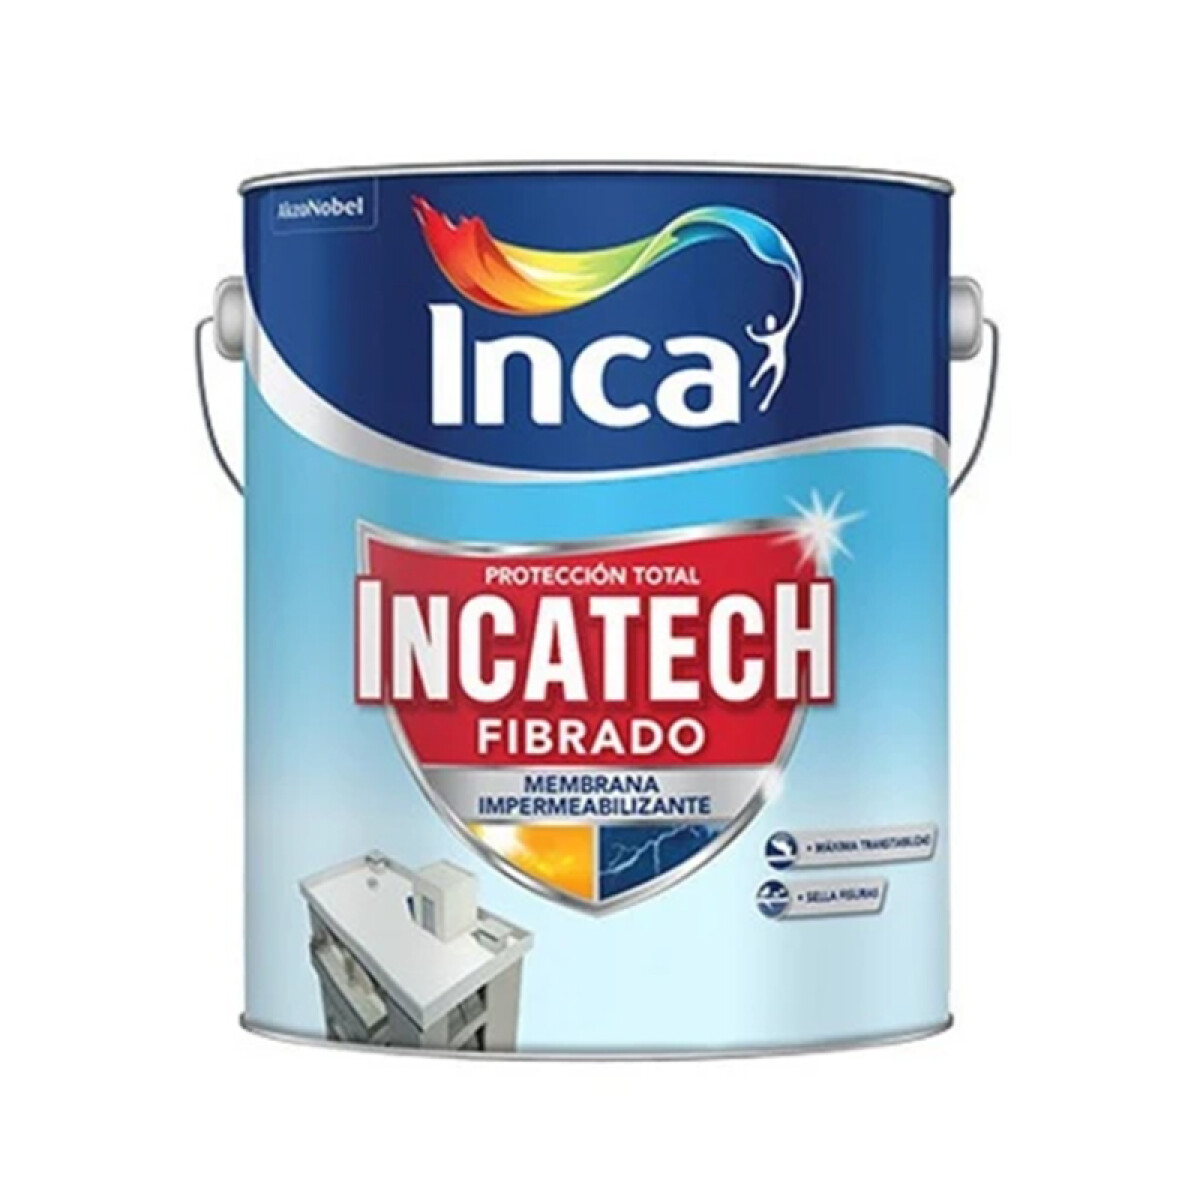 INCATECH FIBRADO 4L PROMO INCA 